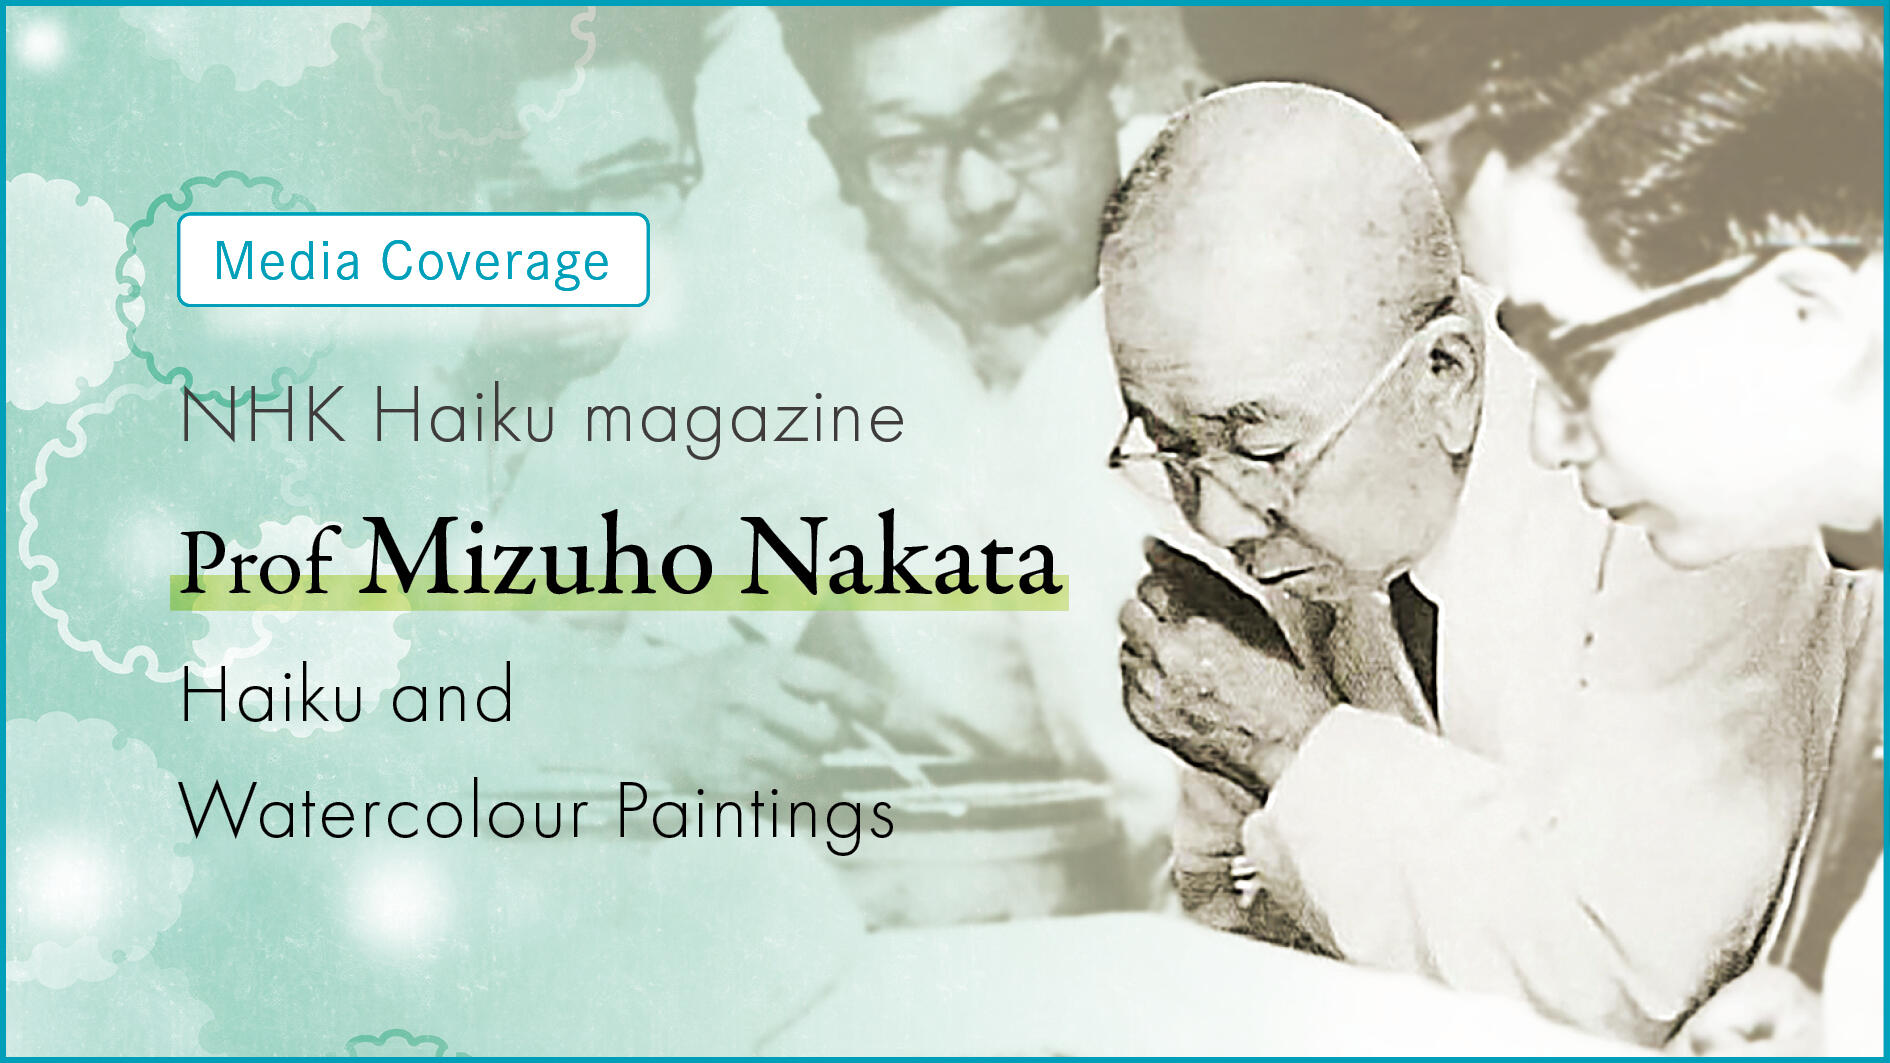 NHK Haiku magazine spotlights Prof Mizuho Nakata's haiku and watercolour paintings